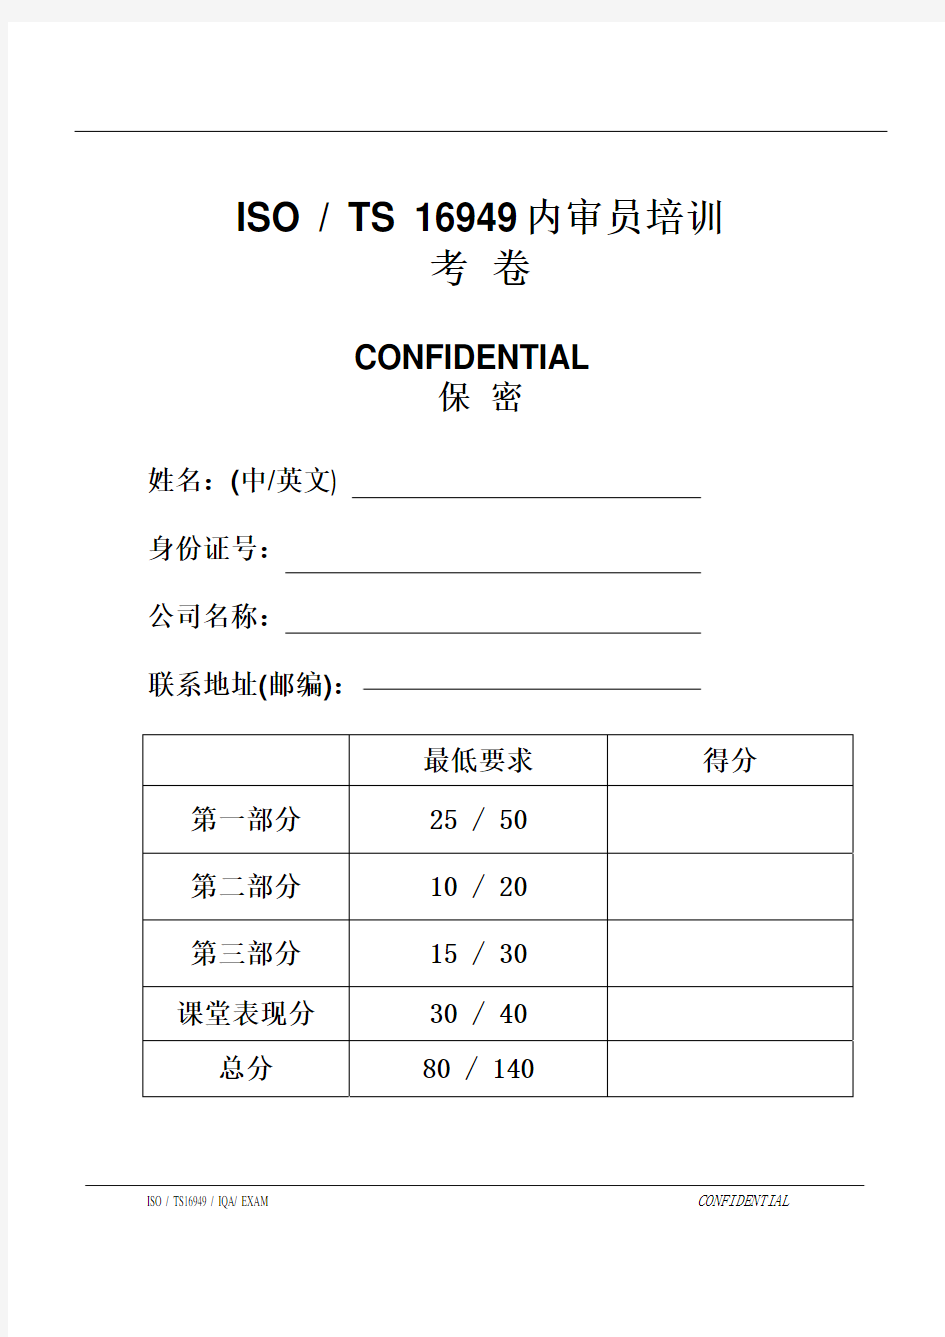 TS1694909内审员考卷